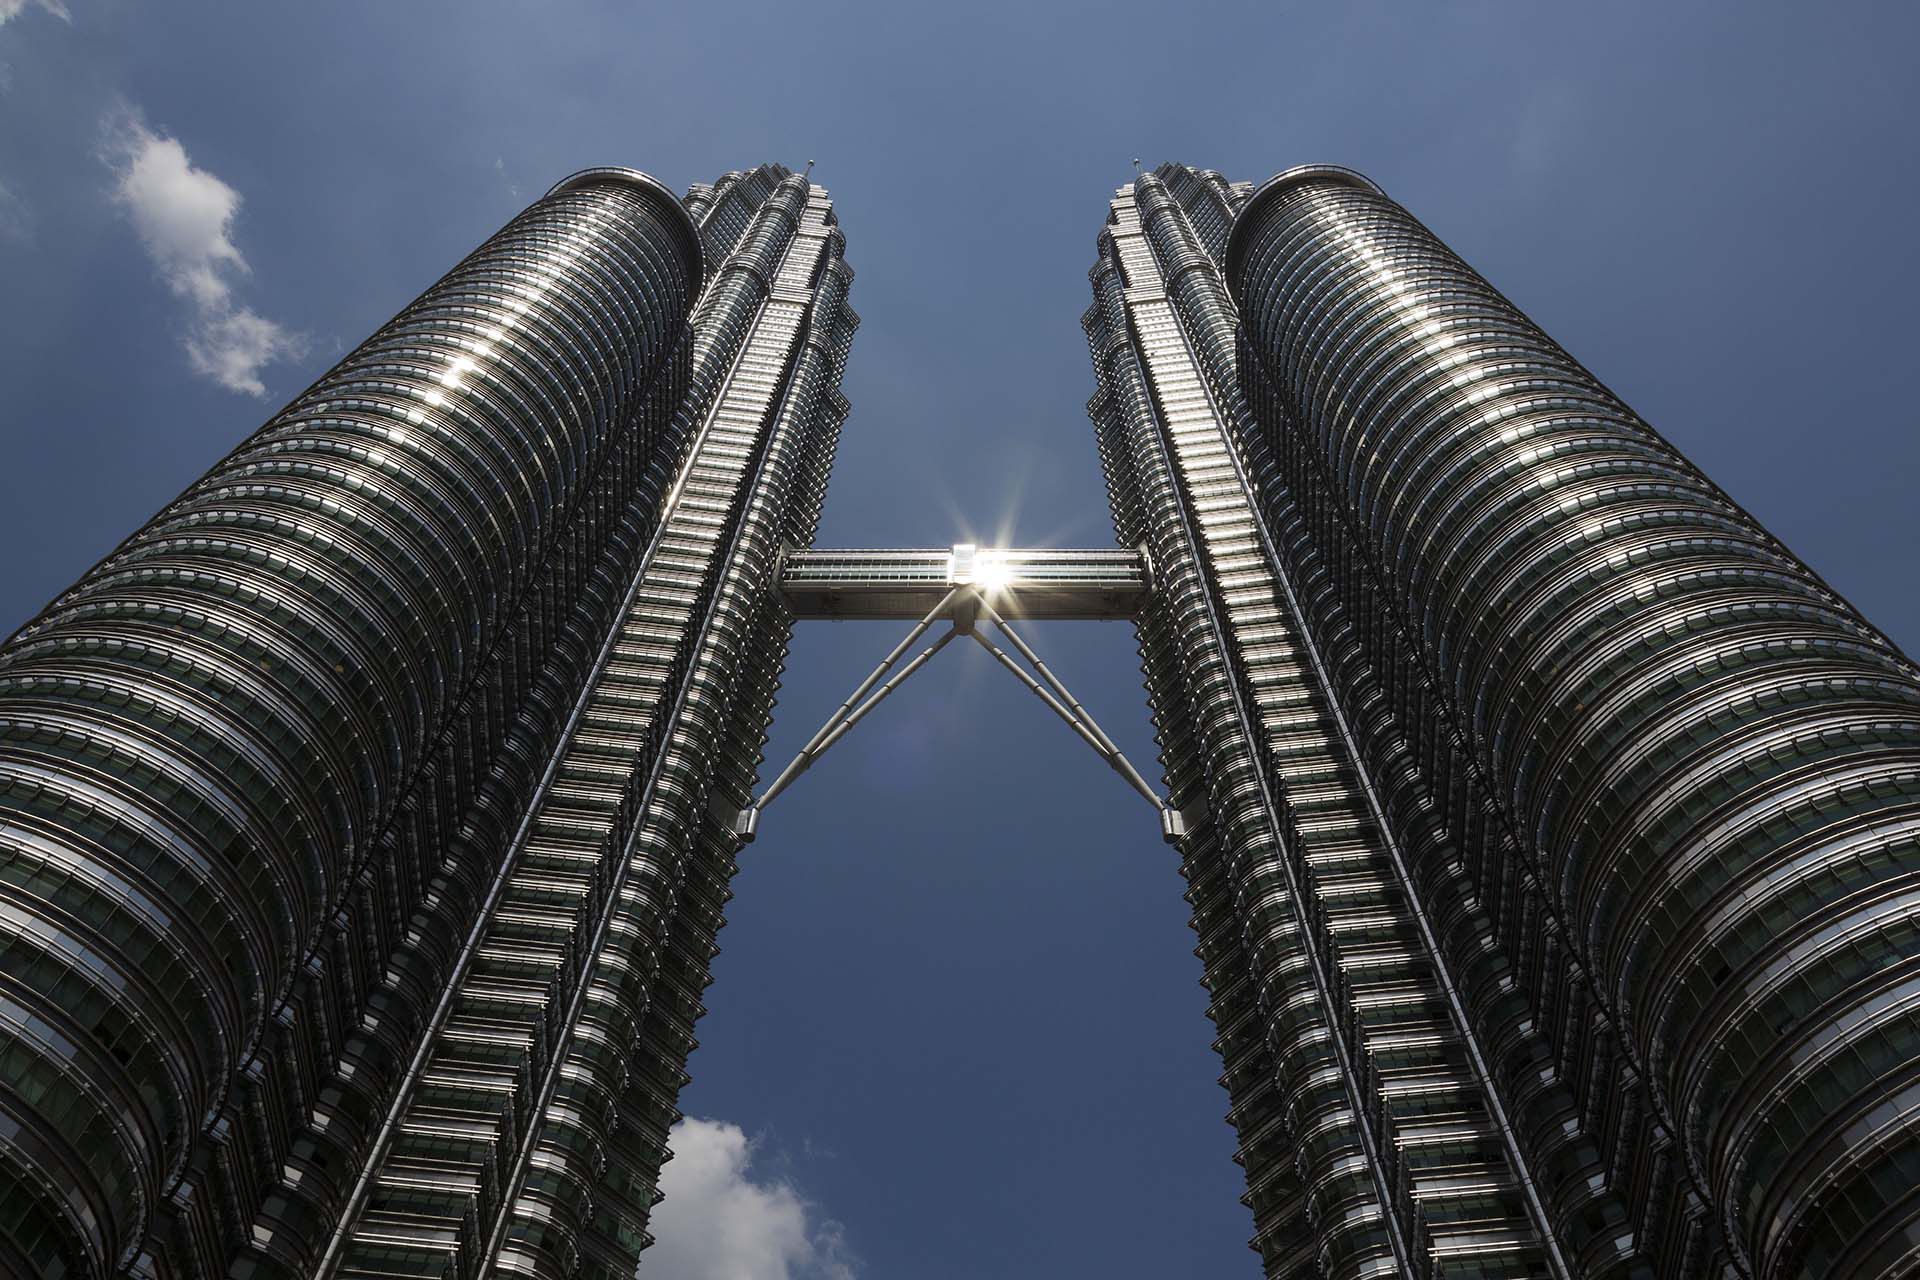 Otra vista precisa de las Petronas en Kuala Lumpur que muestra la dimensión y solidez de una gran obra, considerada disruptiva en el mundo de la arquitectura (Shutterstock)